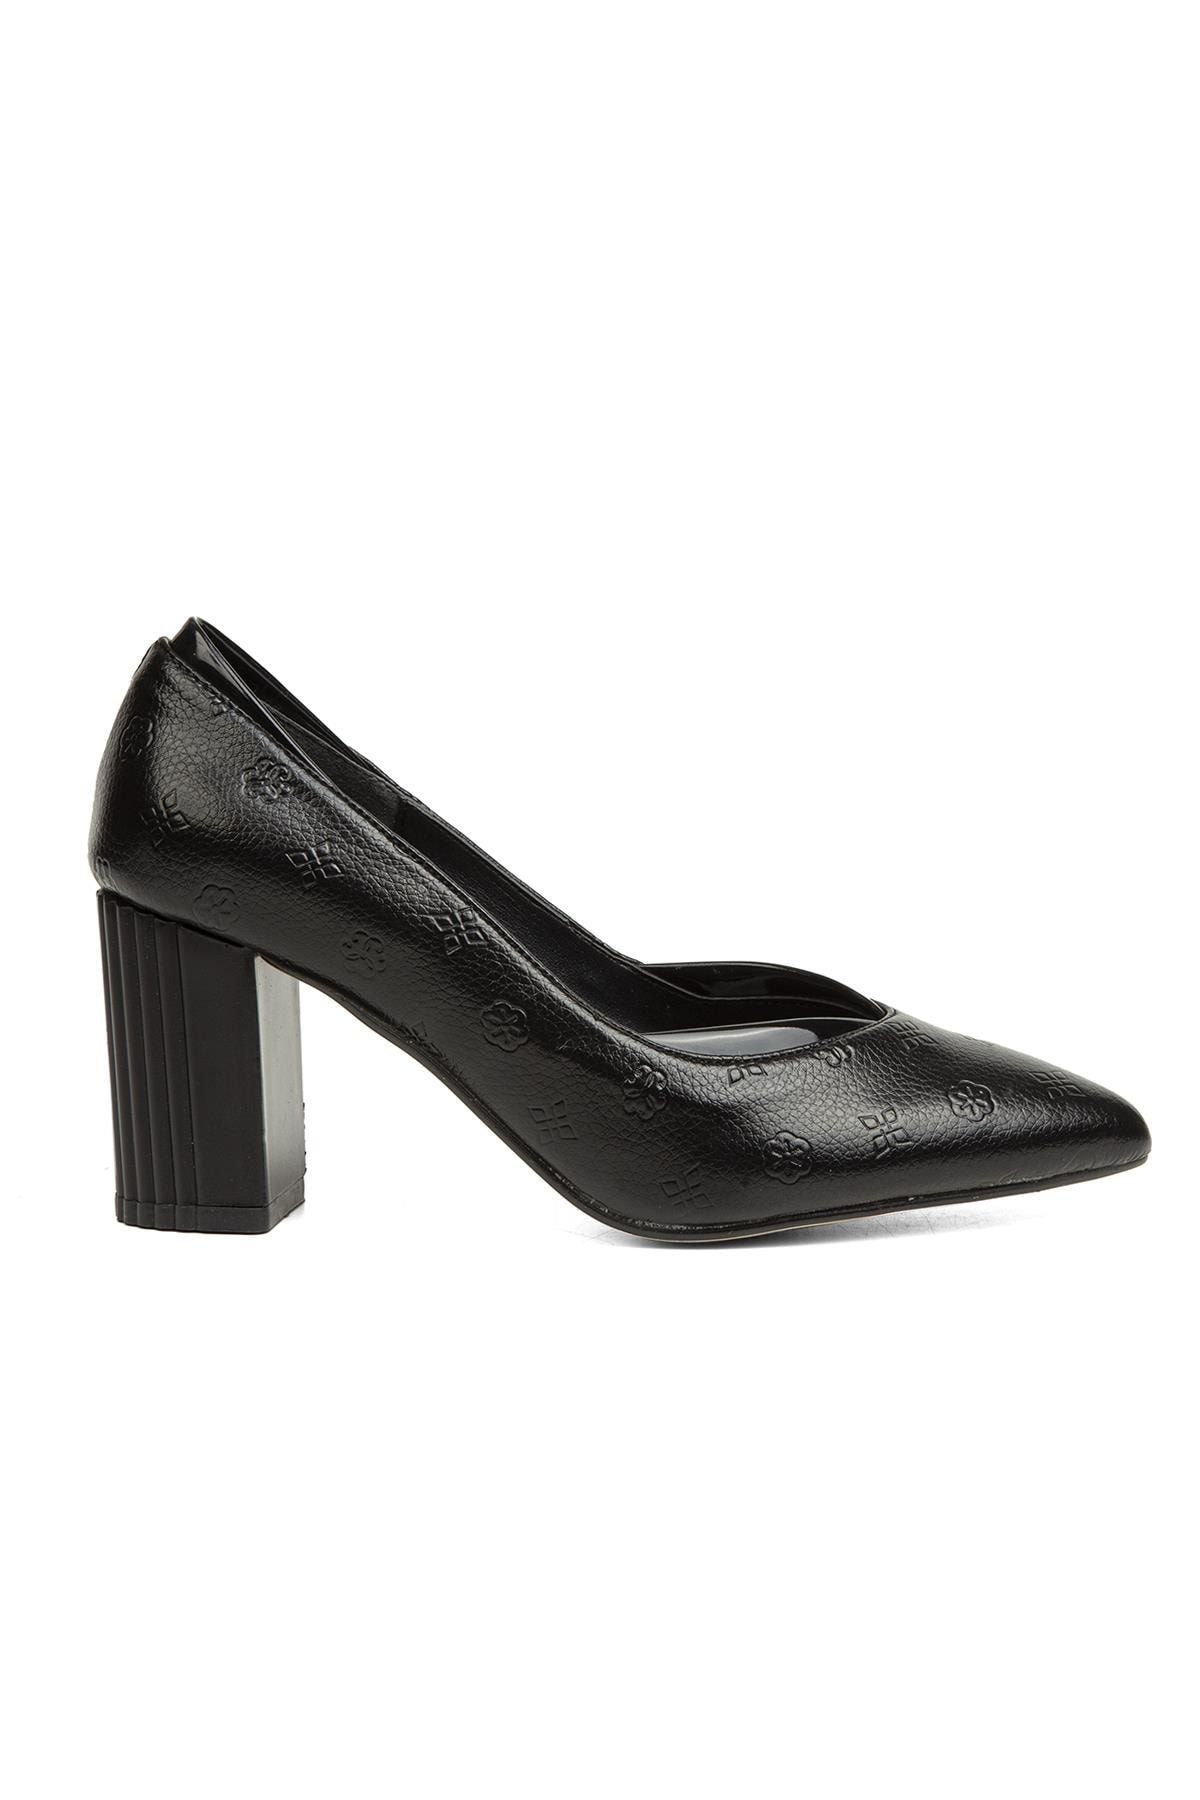 Pierre Cardin ® | Pc-51199 - 3478 Siyah - Kadın Topuklu Ayakkabı